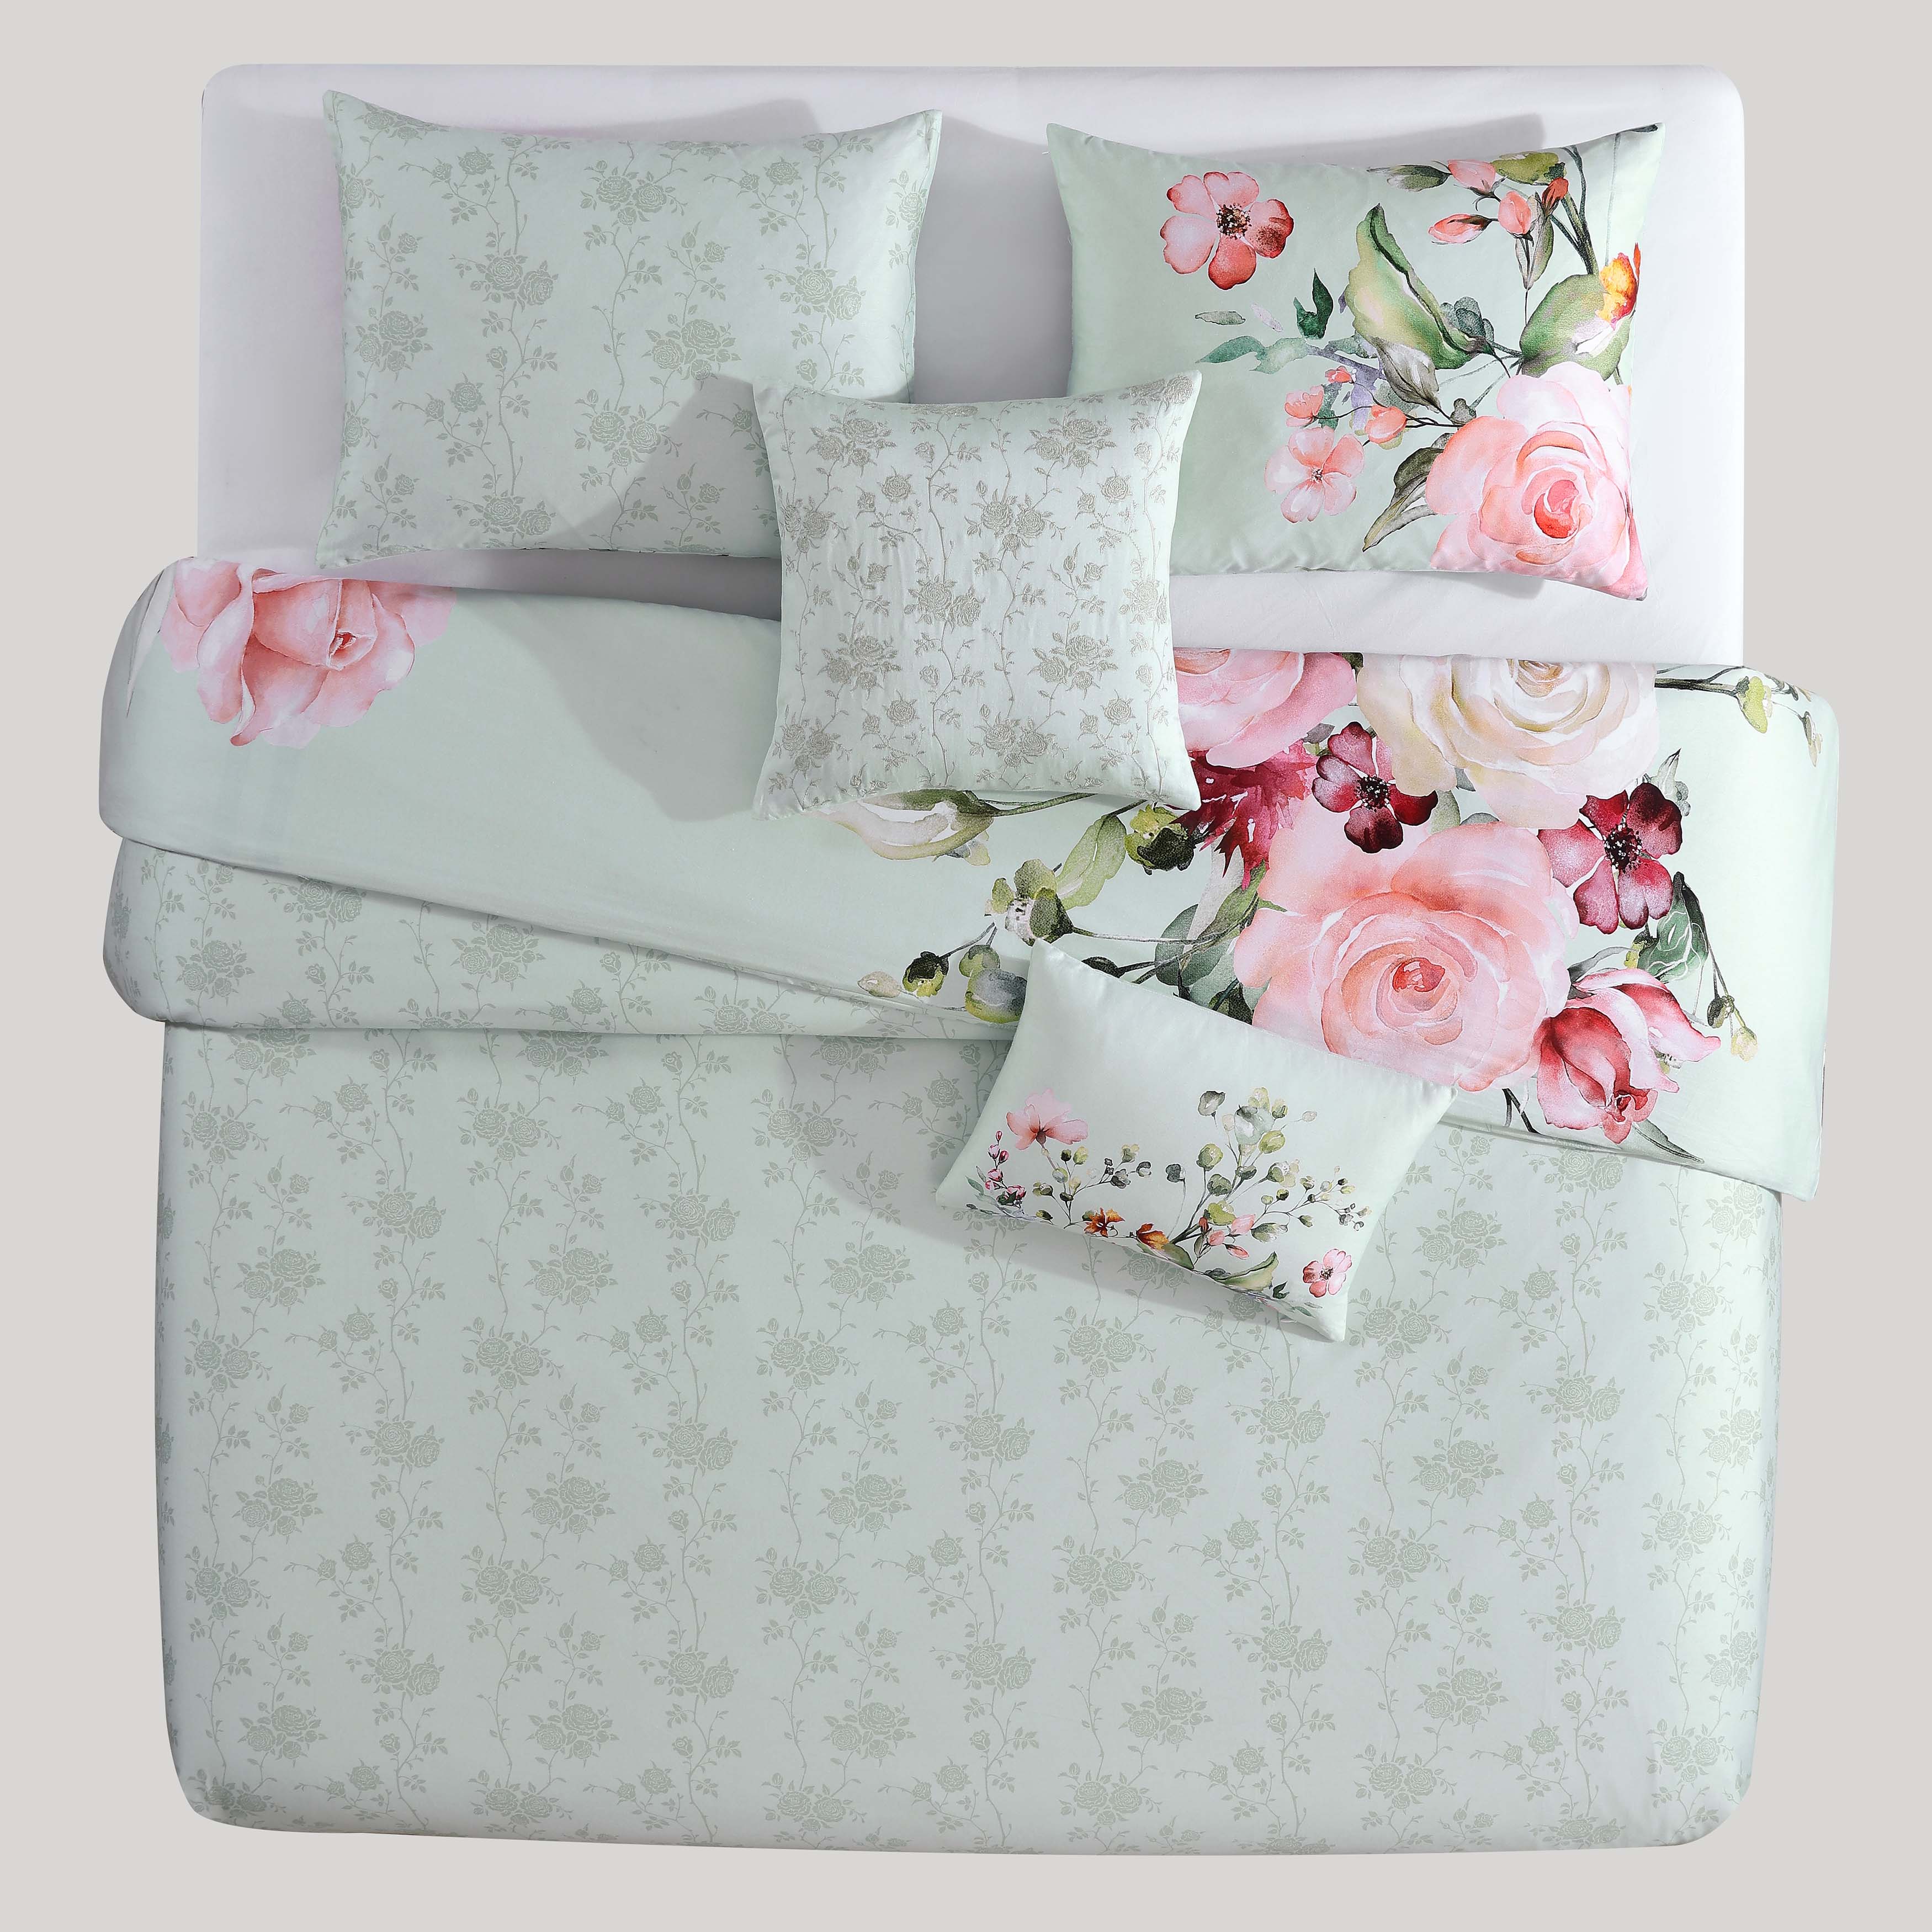 Bebejan Rose on Misty Green 100% Cotton 5-Piece Reversible Comforter Set - King